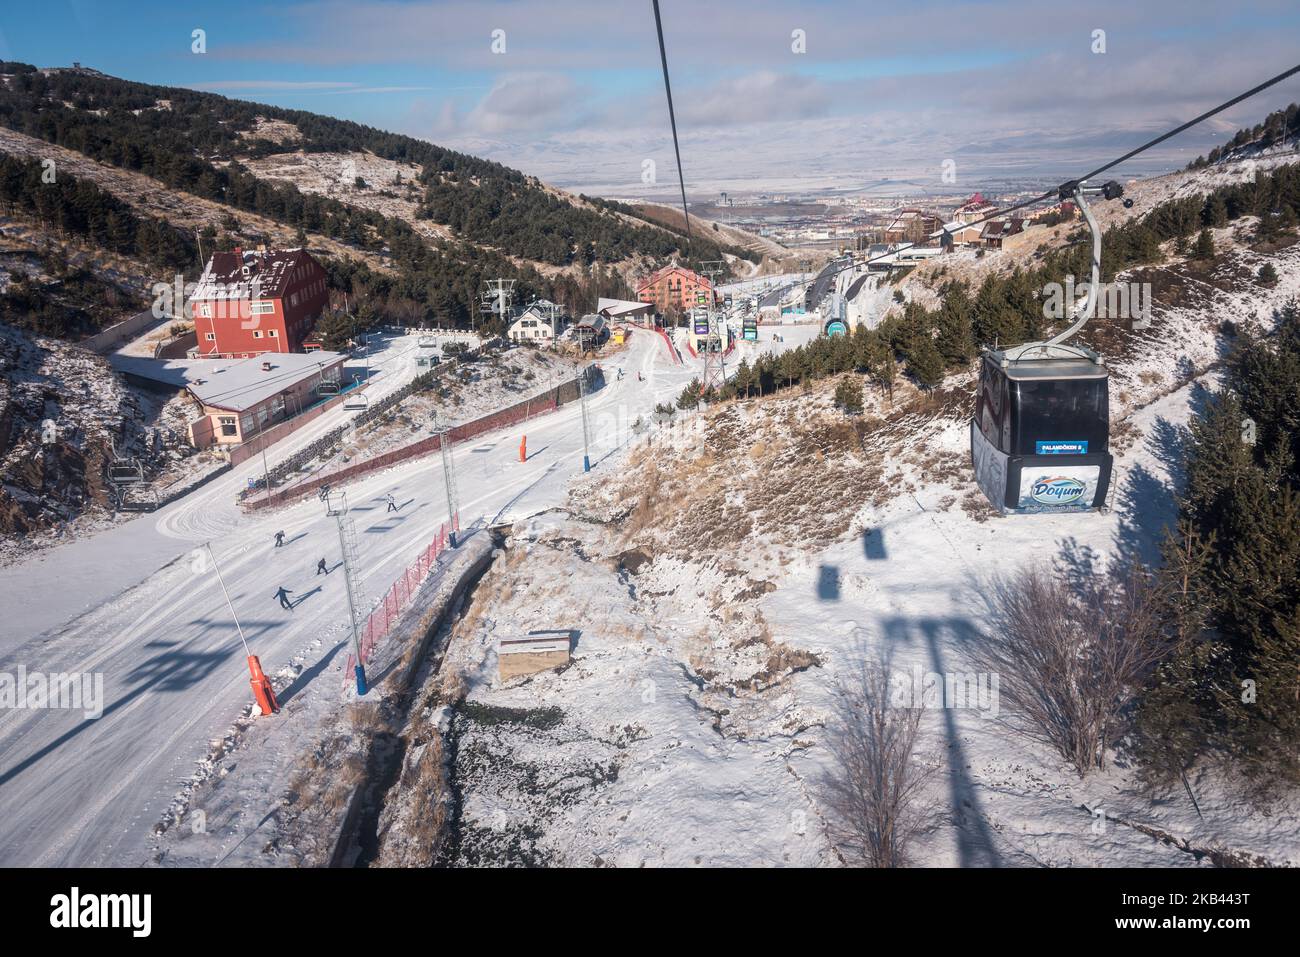 Am 9. Dezember 2018 fahren Wintersportler mit der Gondel auf das Skigebiet Ejder 3200 Palandoken in den schneebedeckten Bergen südlich von Erzurum, einem beliebten Ski- und Snowboardziel im östlichen Anatolien der Türkei. (Foto von Diego Cupolo/NurPhoto) Stockfoto